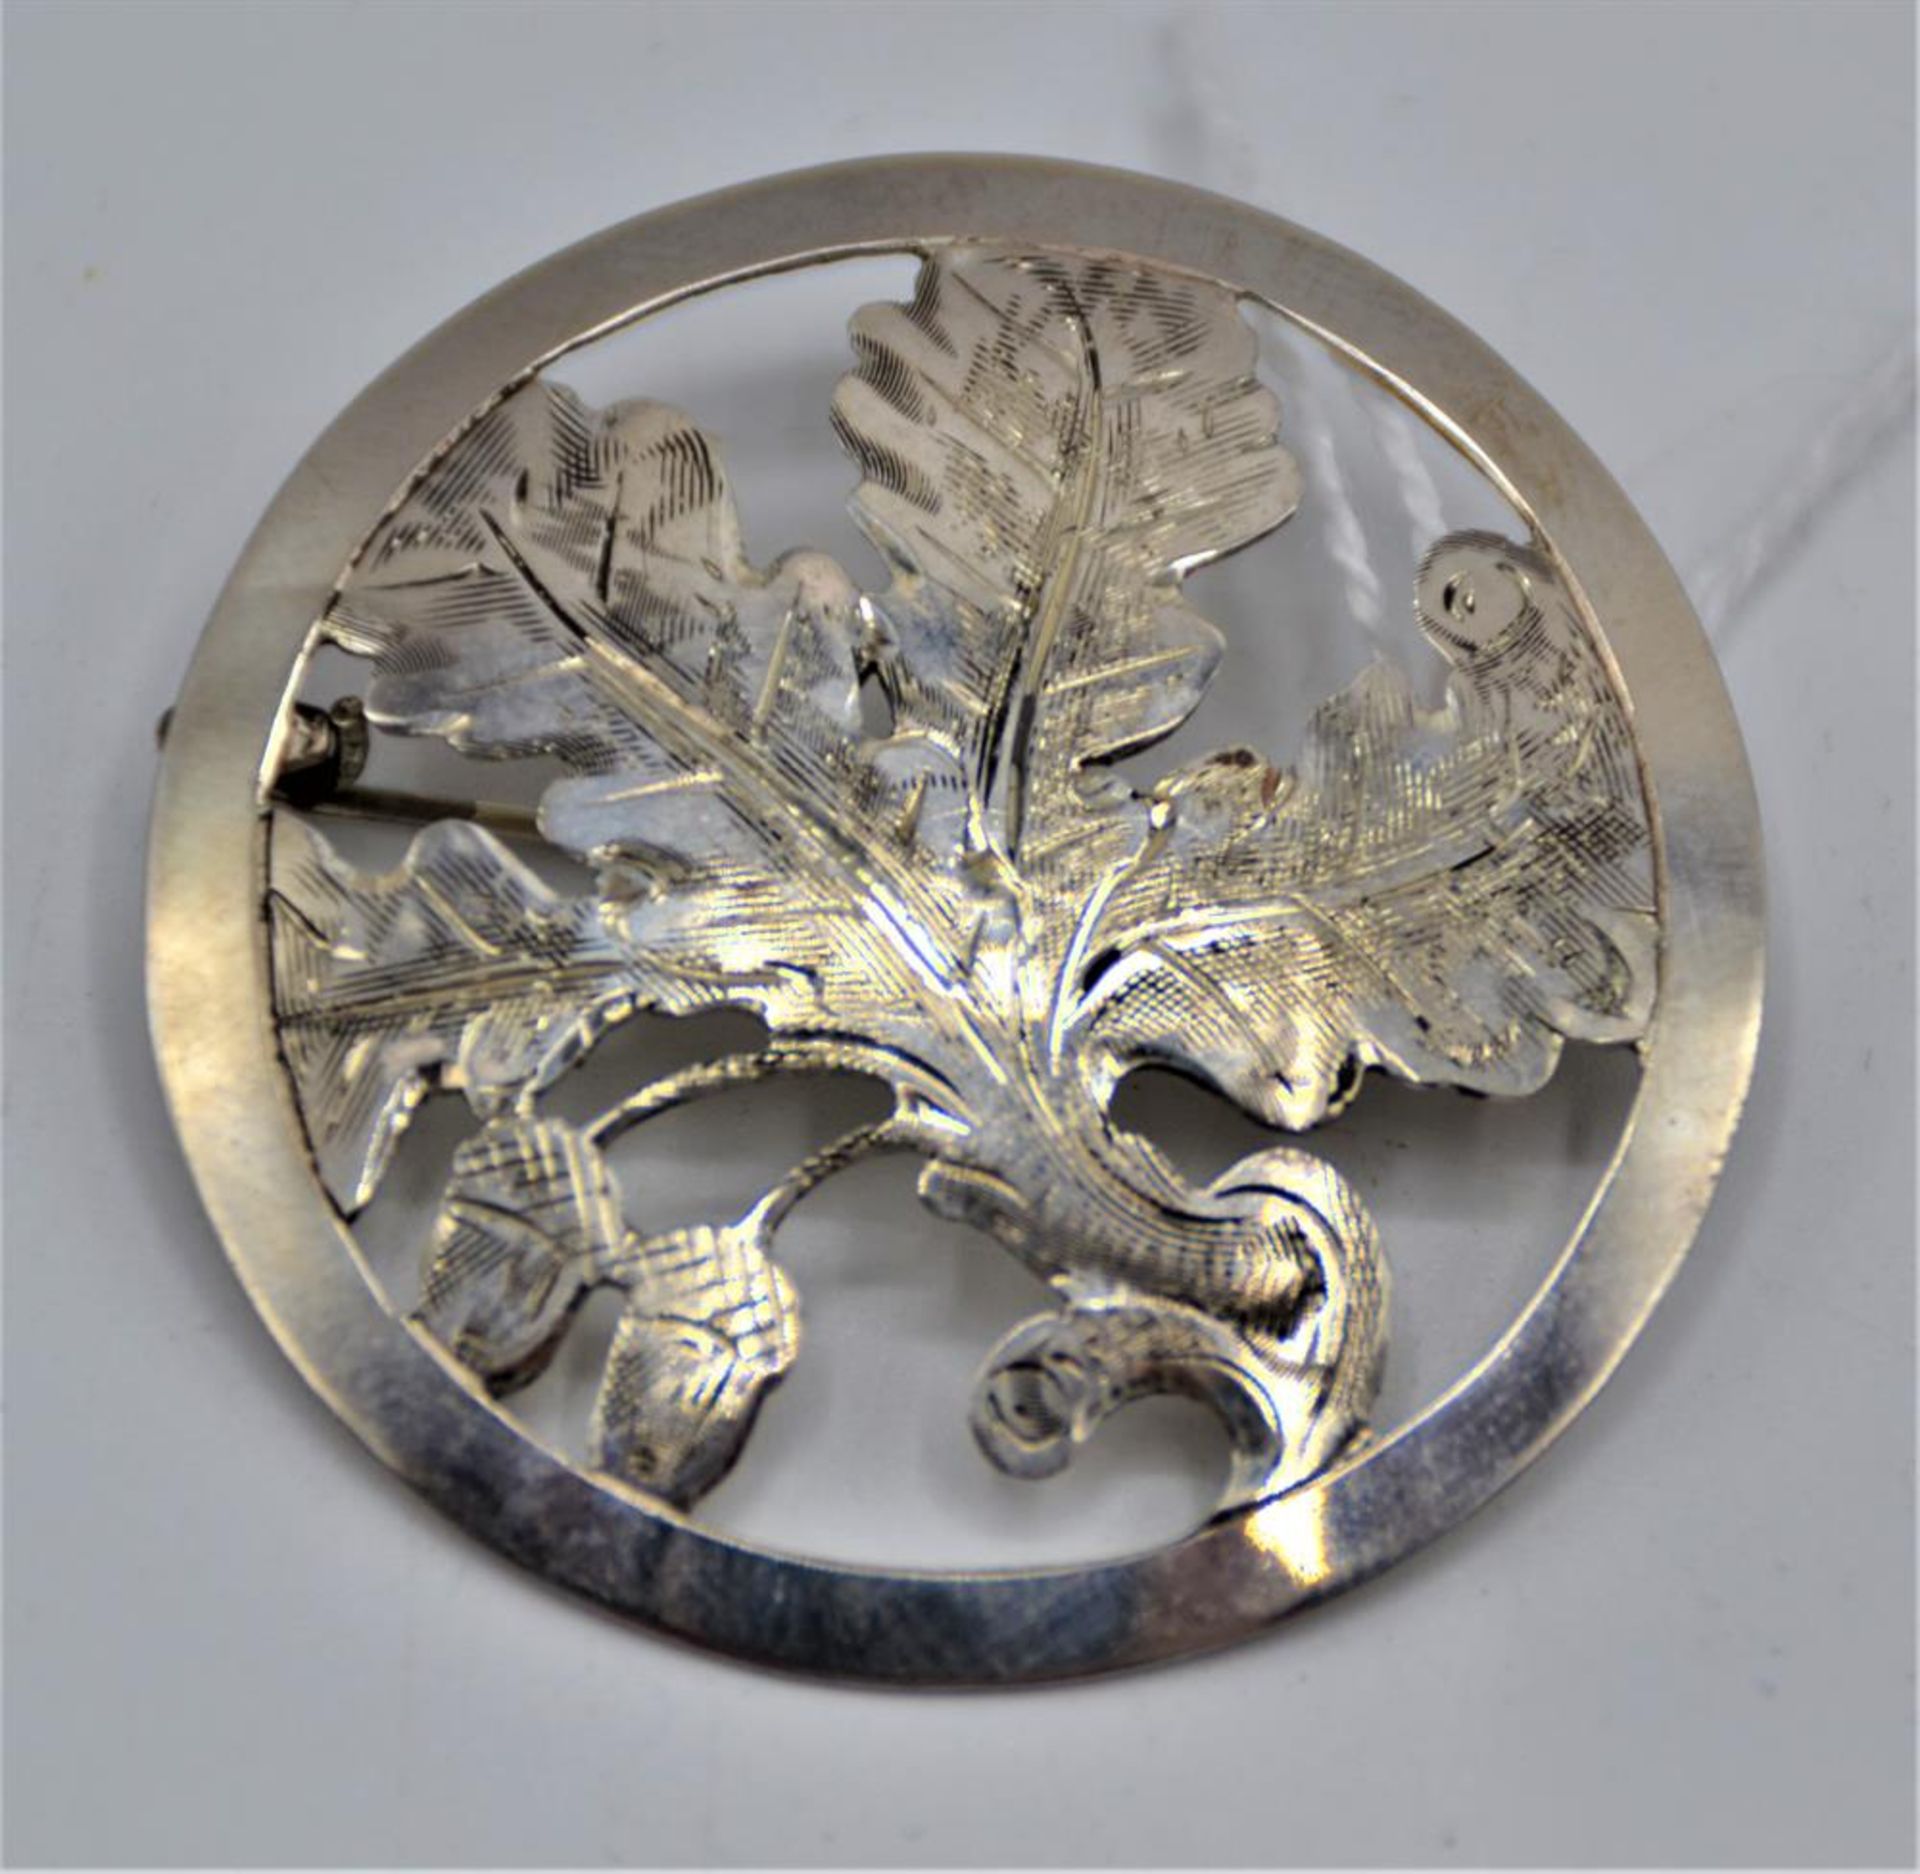 Silberbrosche Eichenlaub, 900 Silber, Handarbeit fein ziseliert, Øca. 4cm